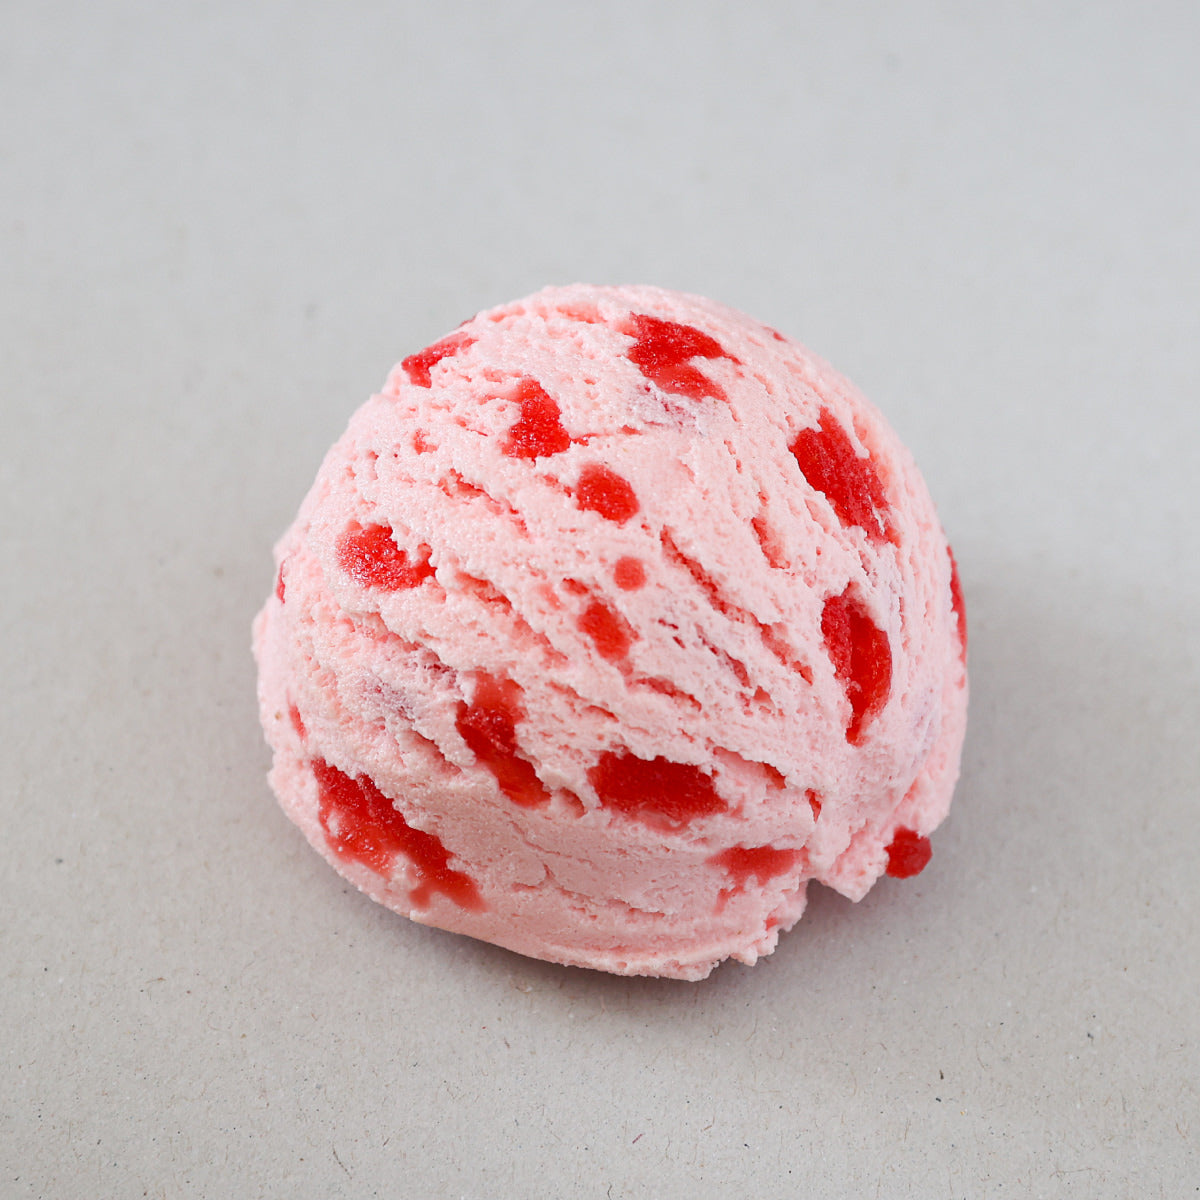 リアルな食品サンプル 食べられないアイス ストロベリー × ストロベリー